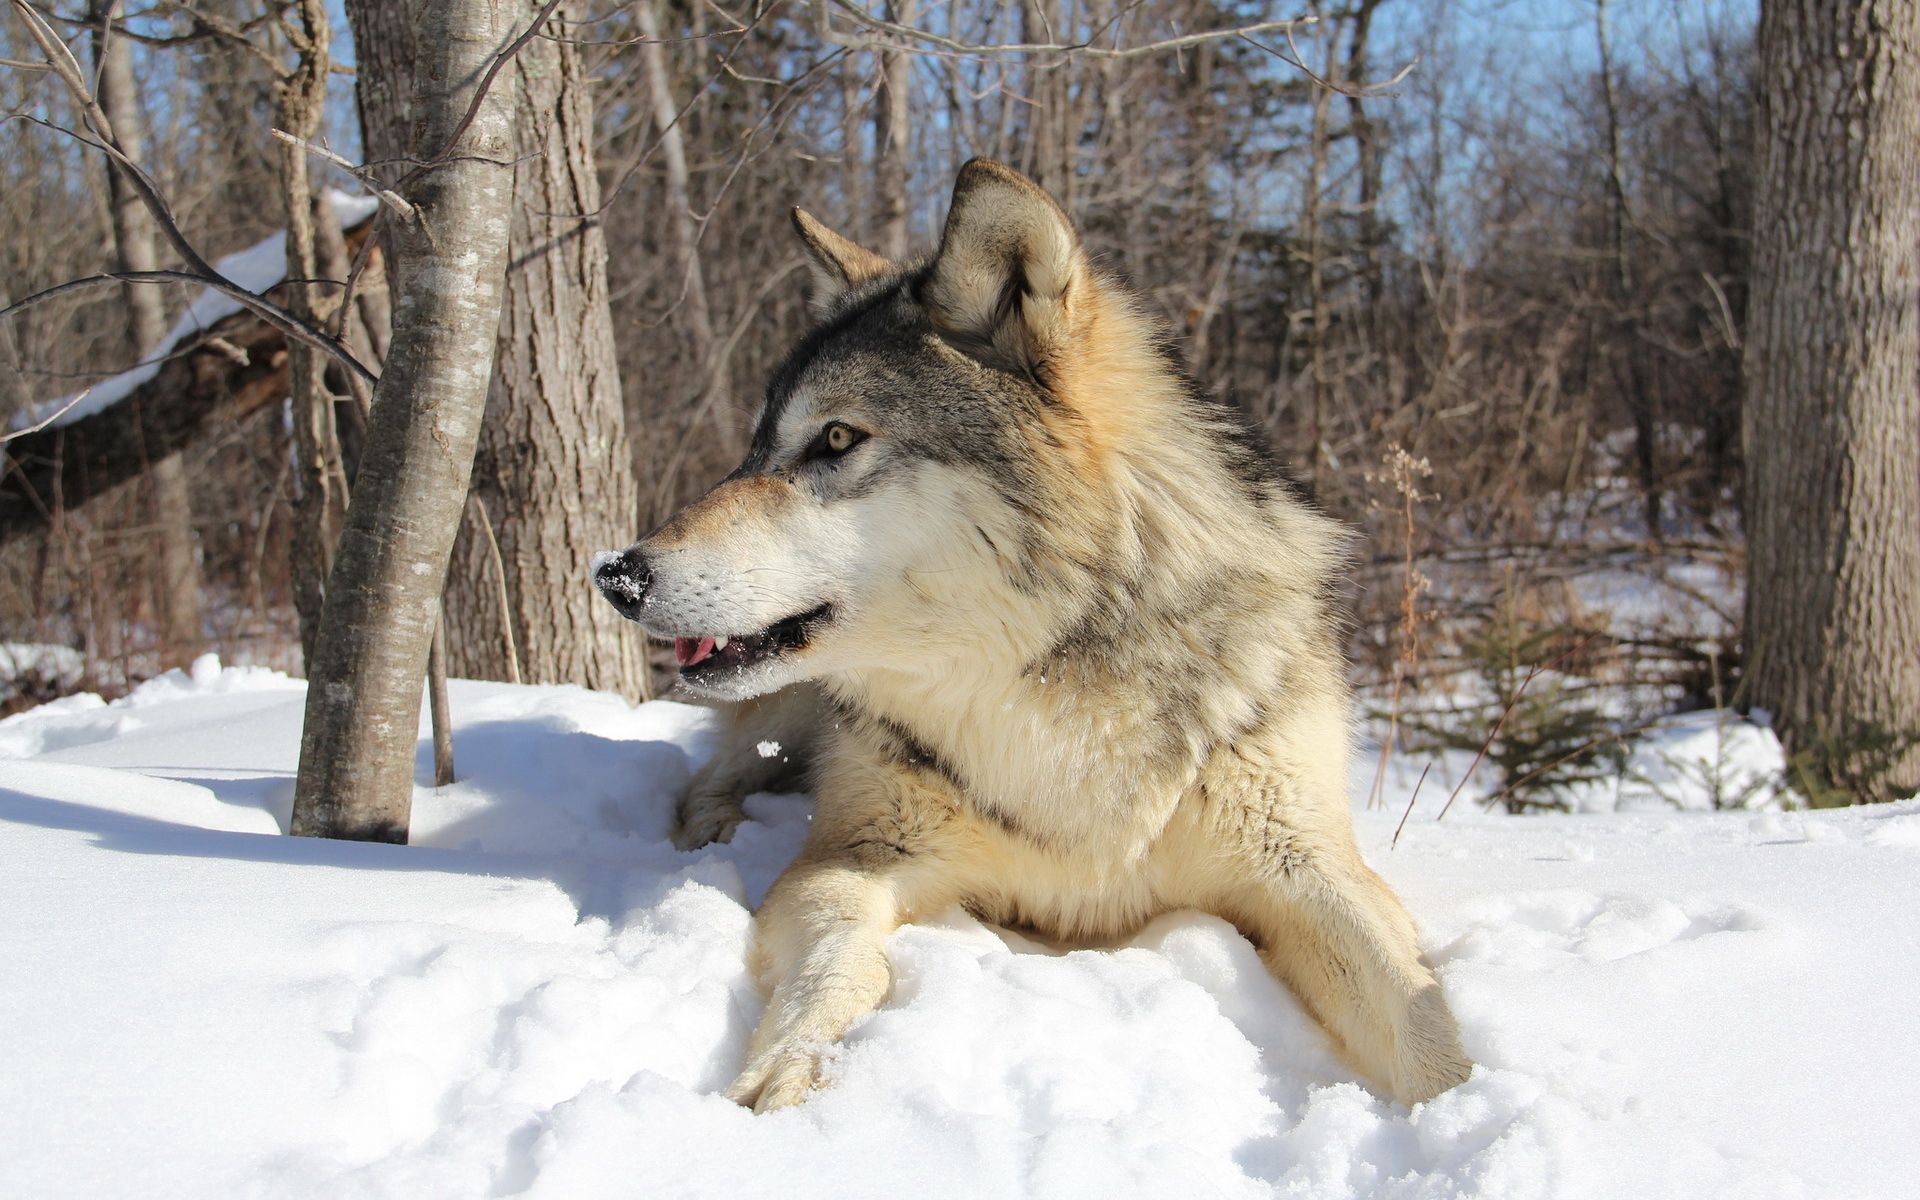 Ultra HD 4K to lie down, animals, wolf, snow